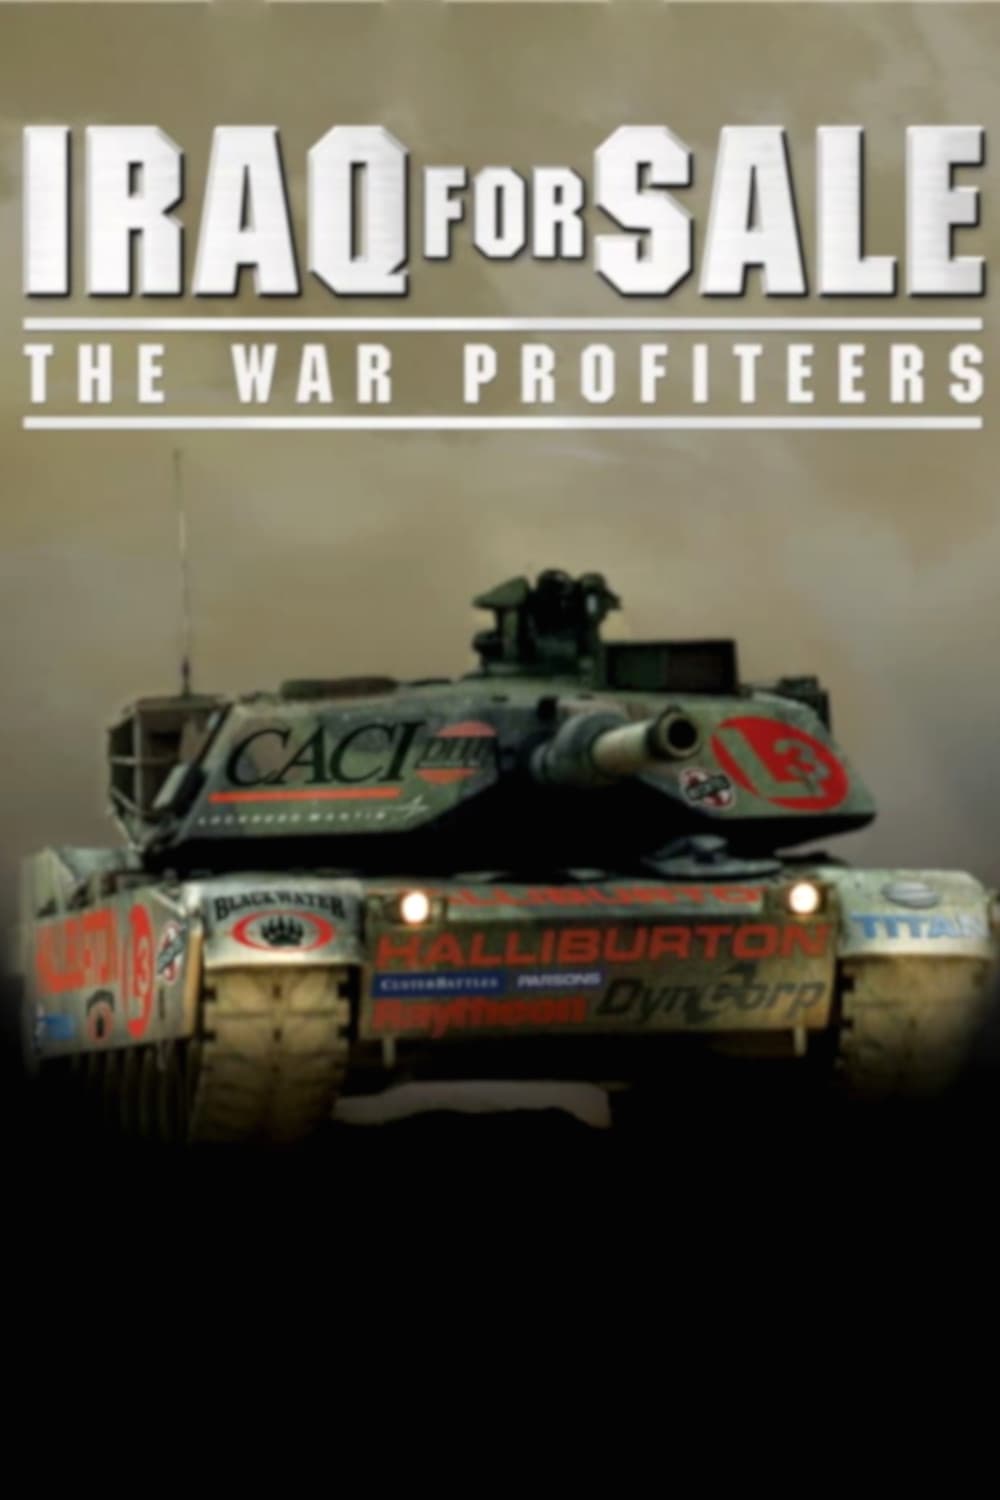 Iraq for Sale: The War Profiteers est-il disponible sur Netflix ou autre ?